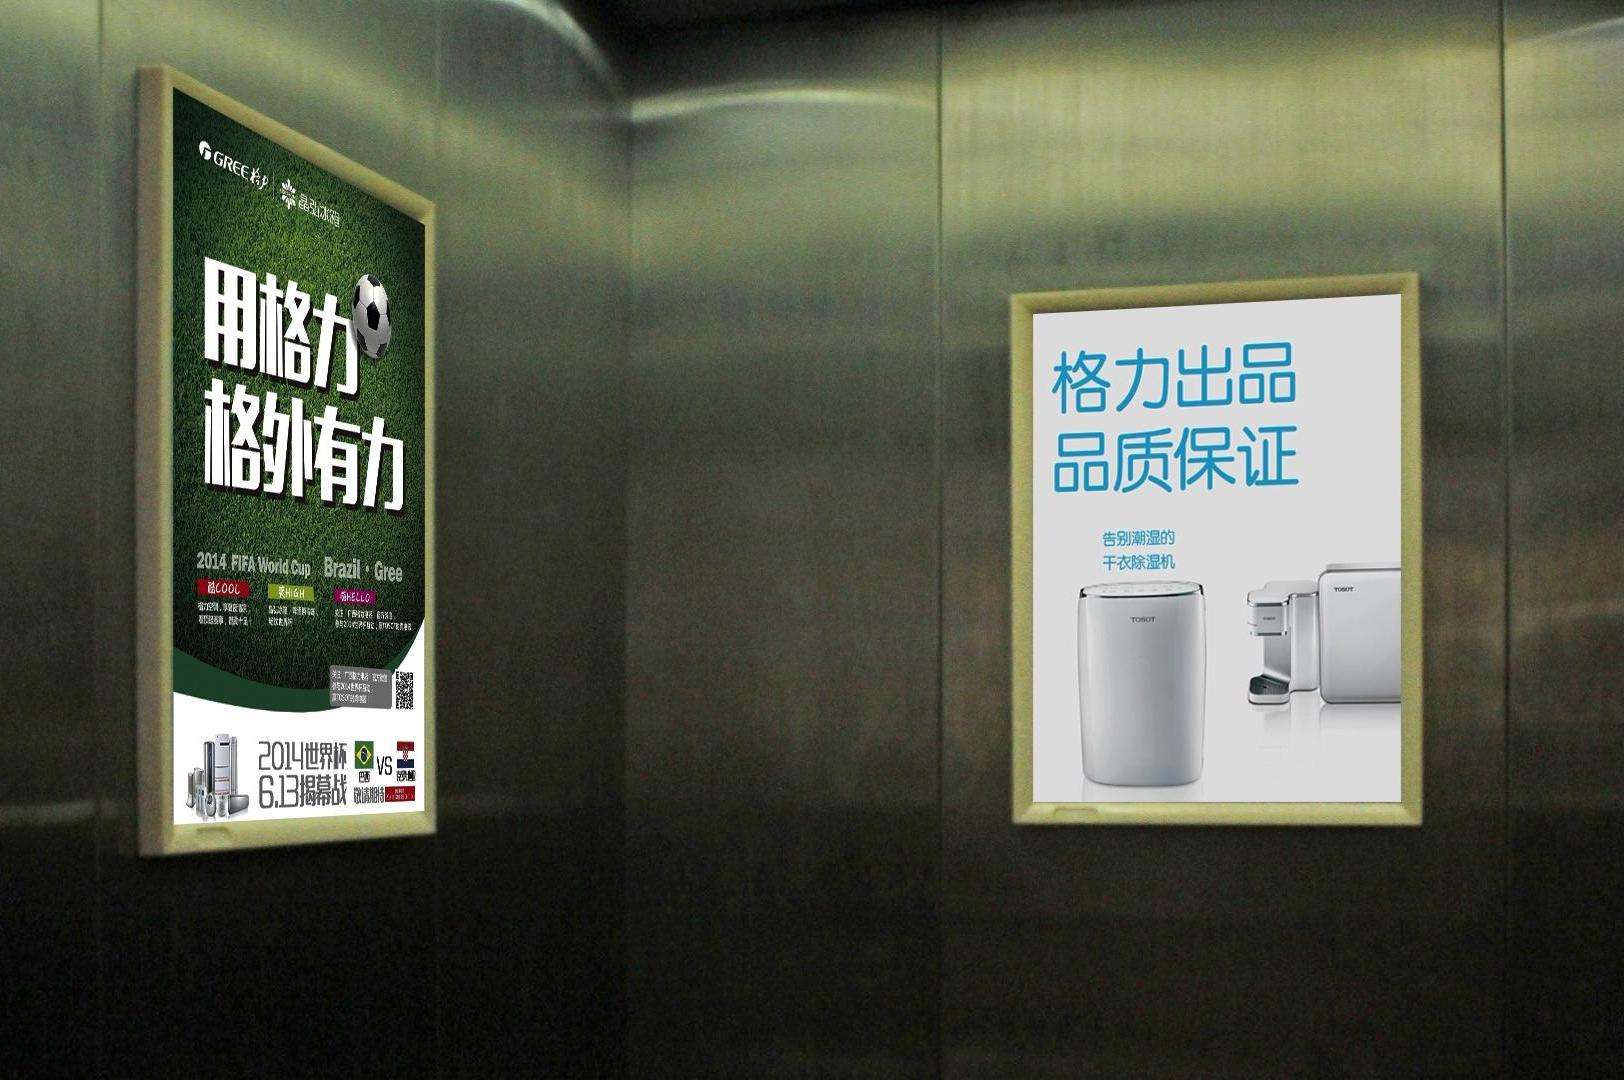 宁德电梯框架广告 宁德电梯电视广告 宁德电梯门广告